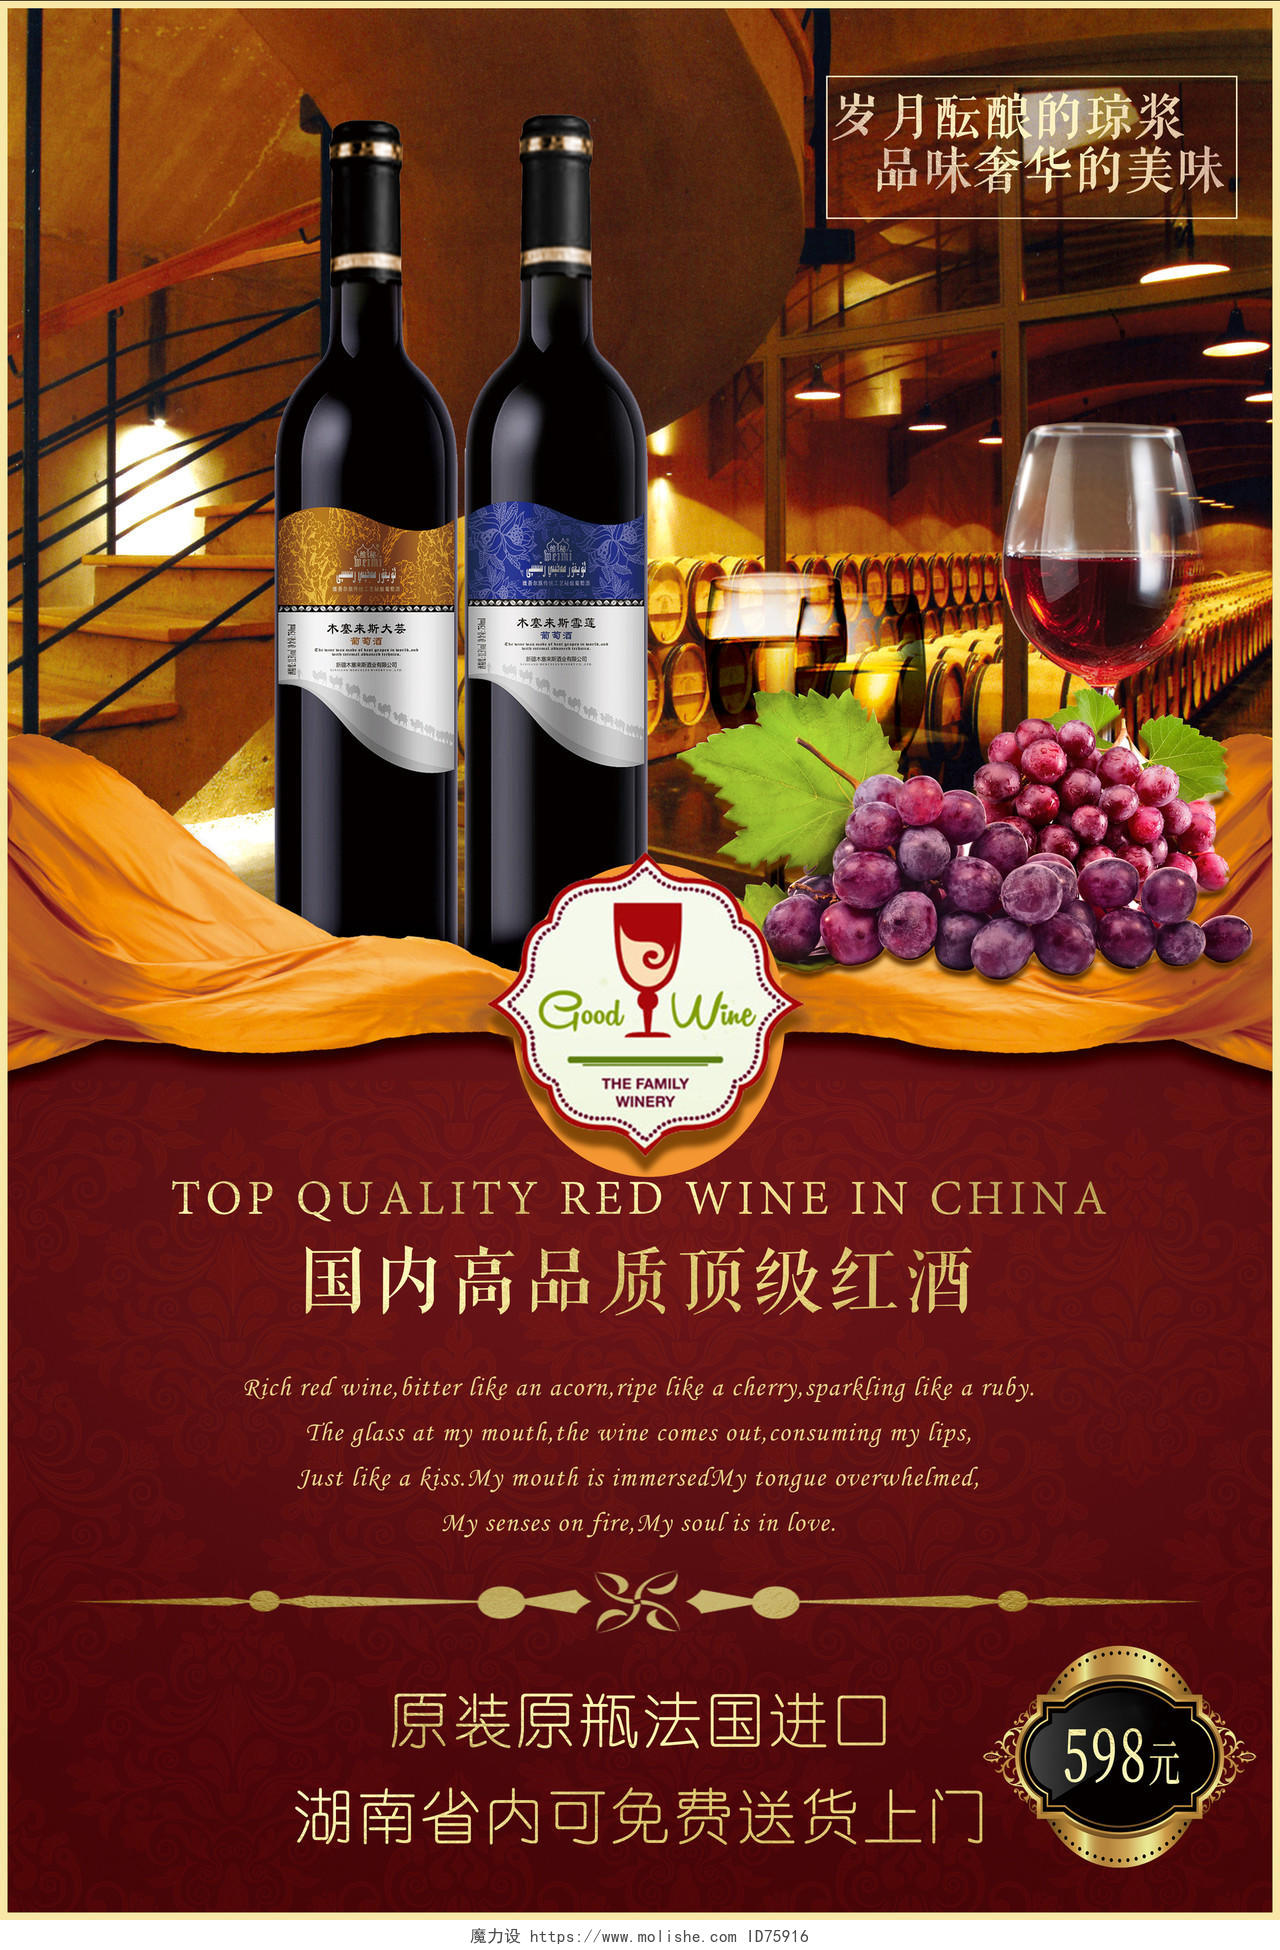 红酒葡萄酒国内顶级品质红酒宣传促销海报